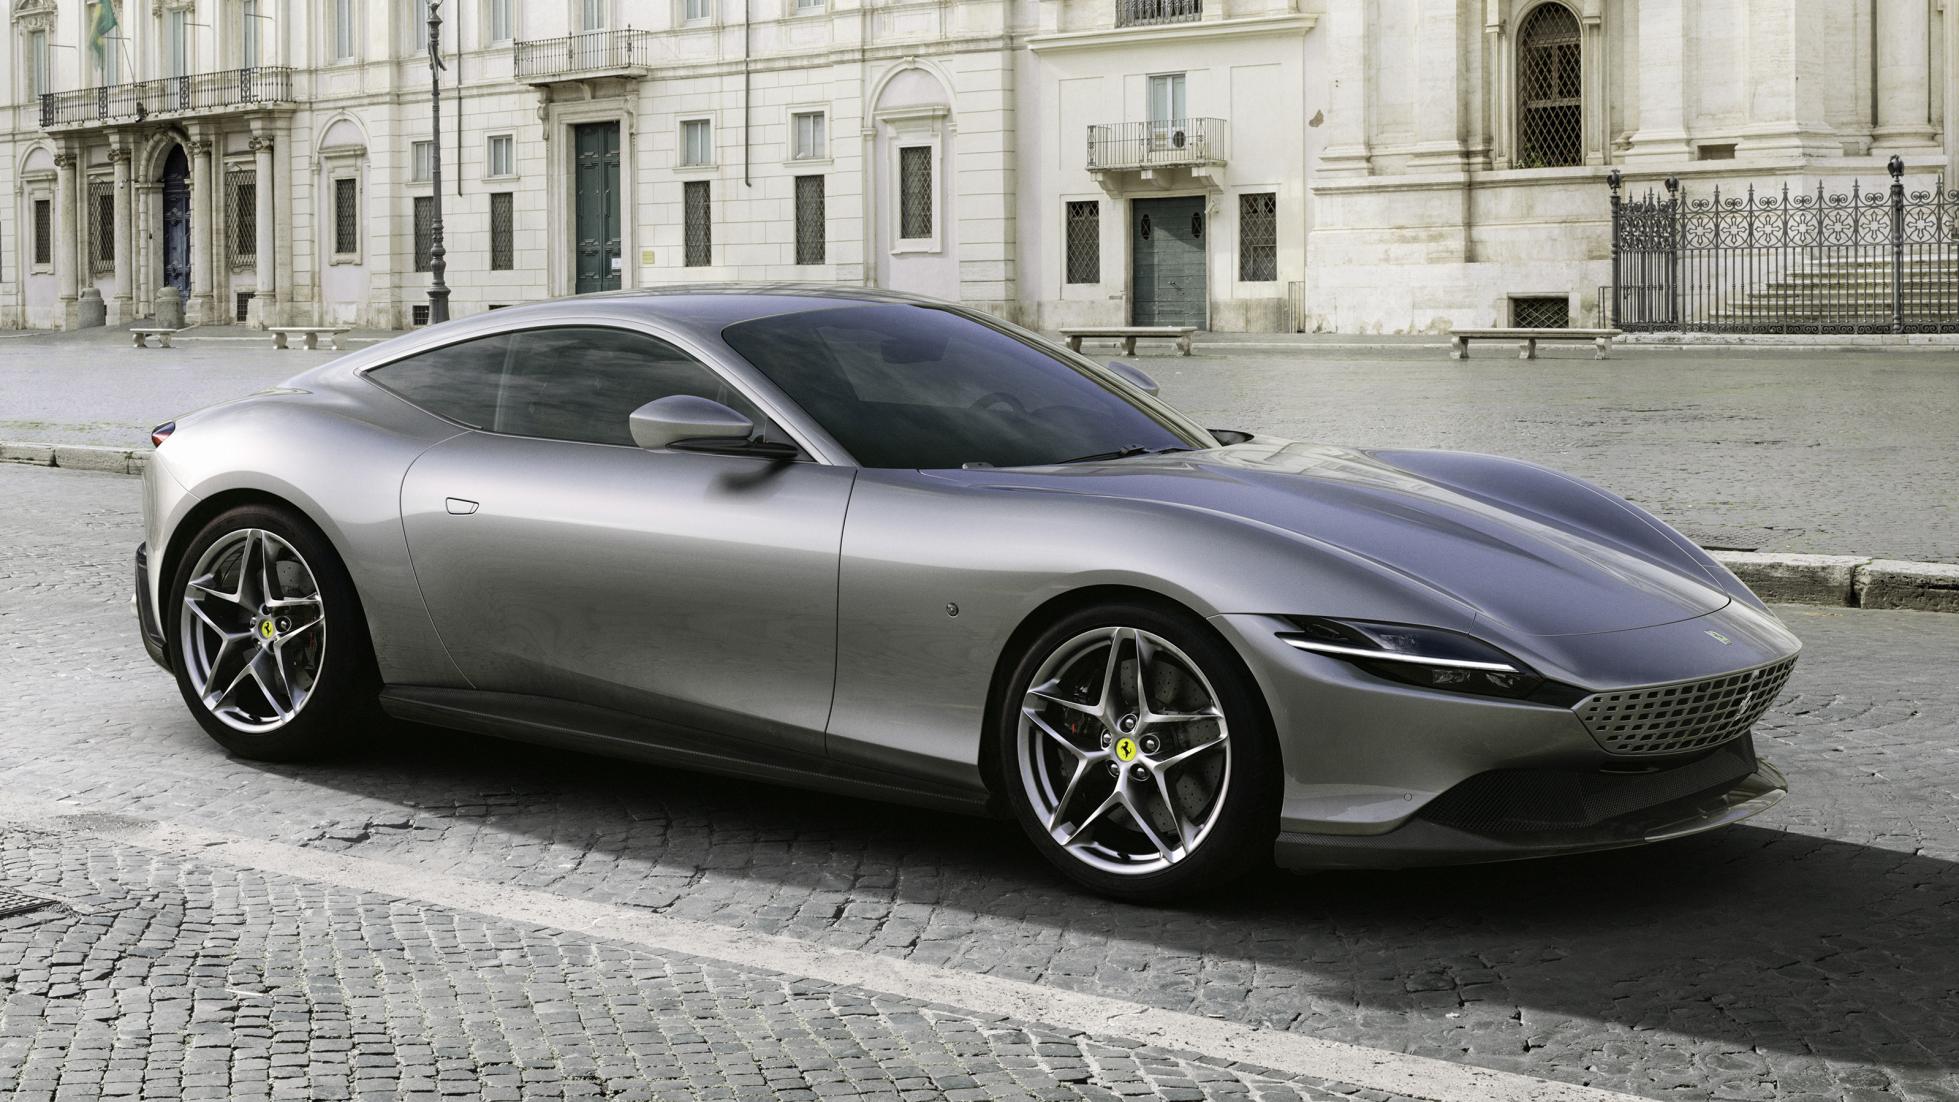 The new Ferrari Roma is an Aston Martin Vantage killer